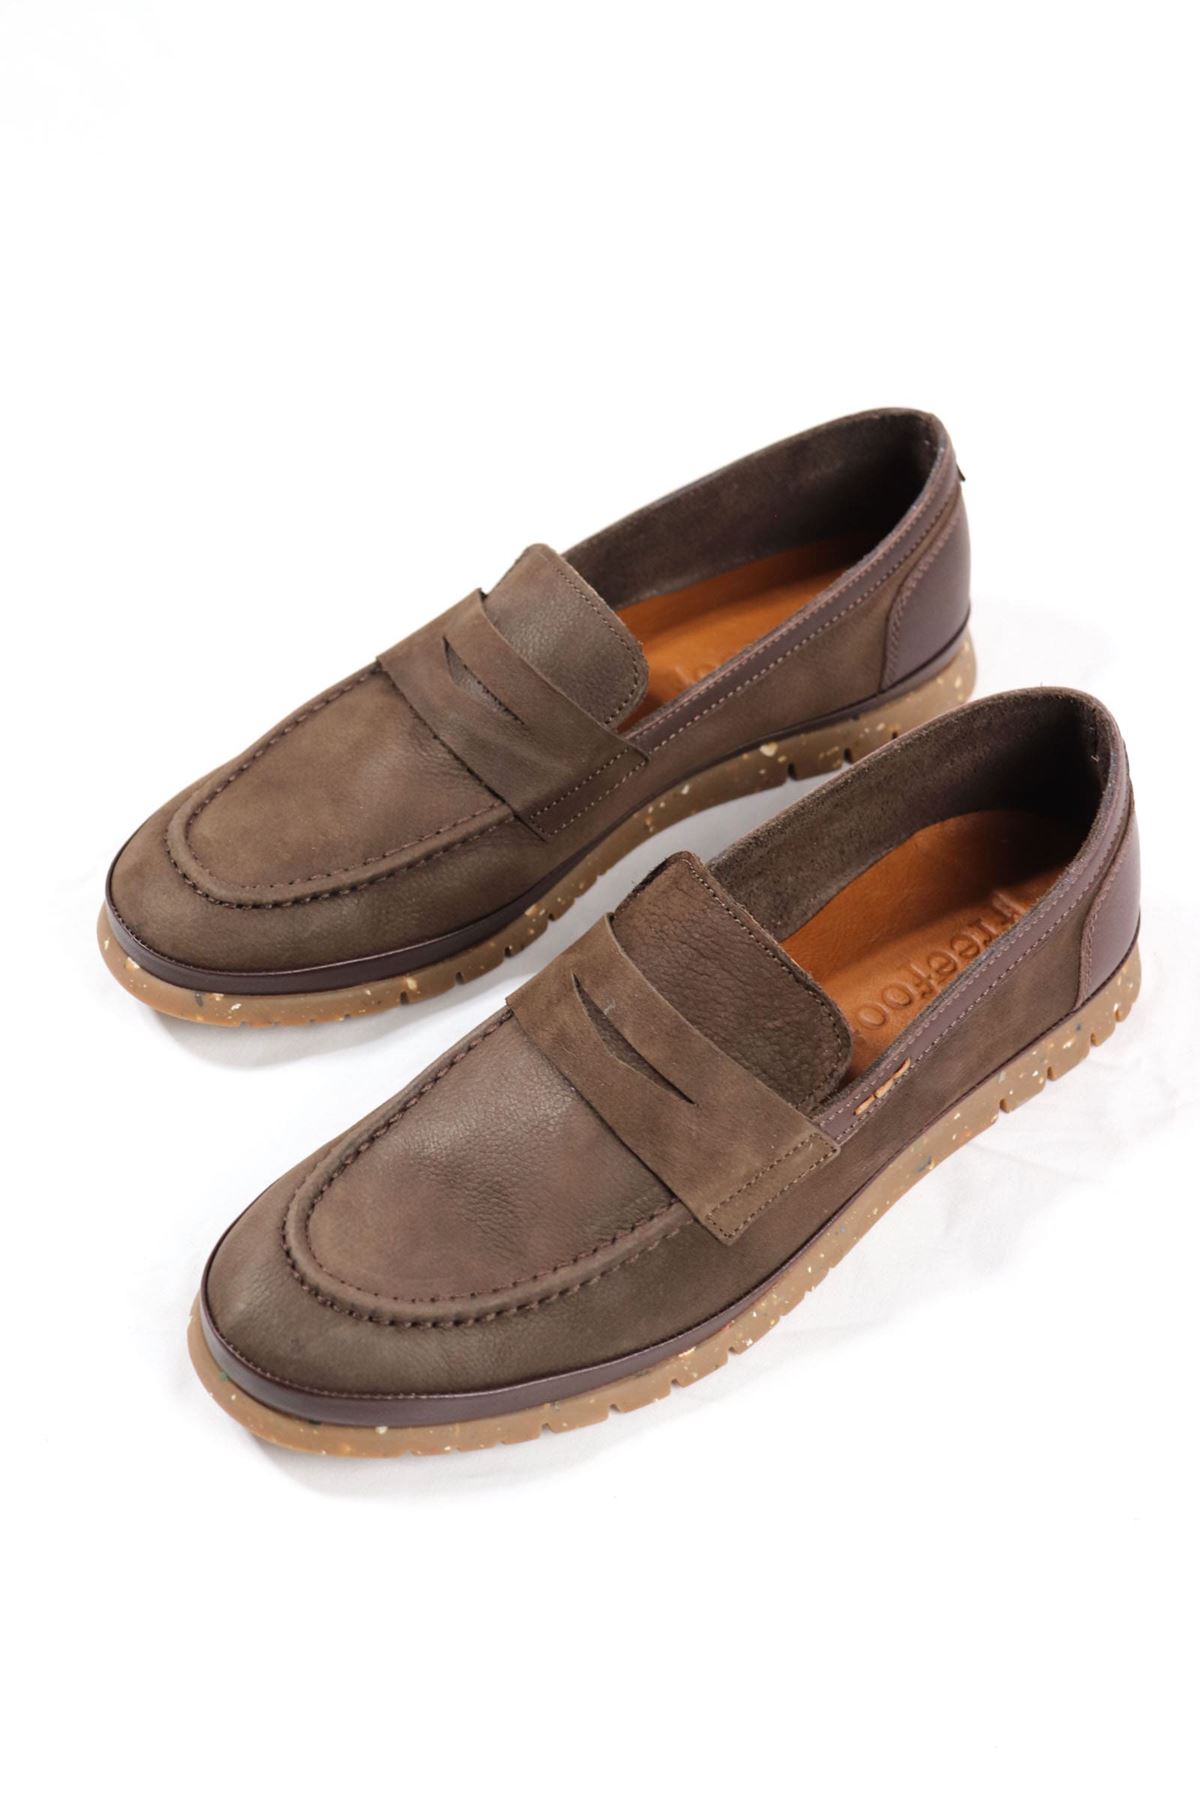 Freefoot - 220161 - Kahverengi Süet Deri Erkek Ayakkabı 